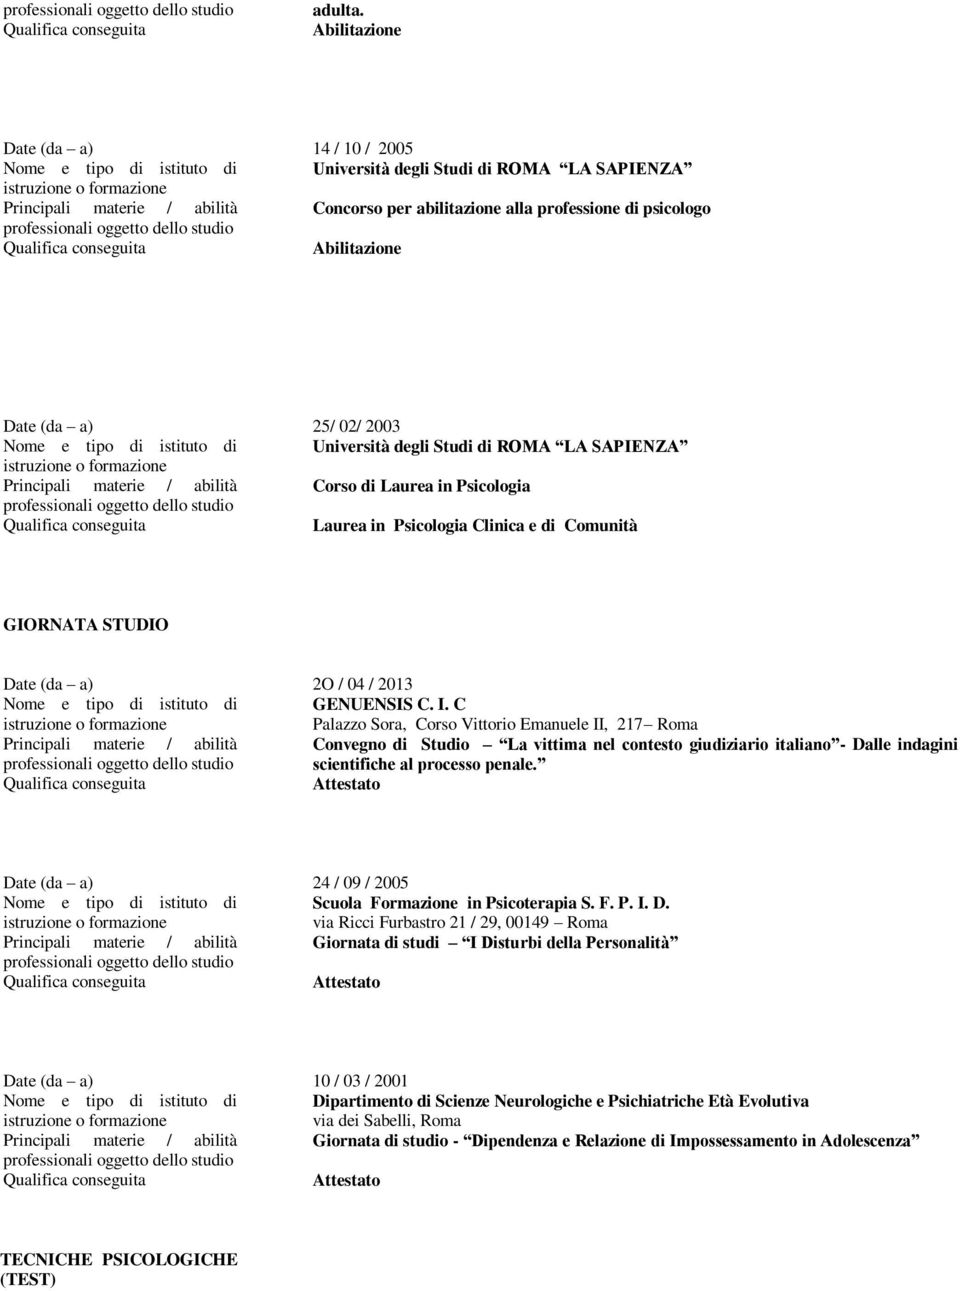 Studi di ROMA LA SAPIENZA Principali materie / abilità Corso di Laurea in Psicologia Laurea in Psicologia Clinica e di Comunità GIORNATA STUDIO Date (da a) 2O / 04 / 2013 GENUENSIS C. I.